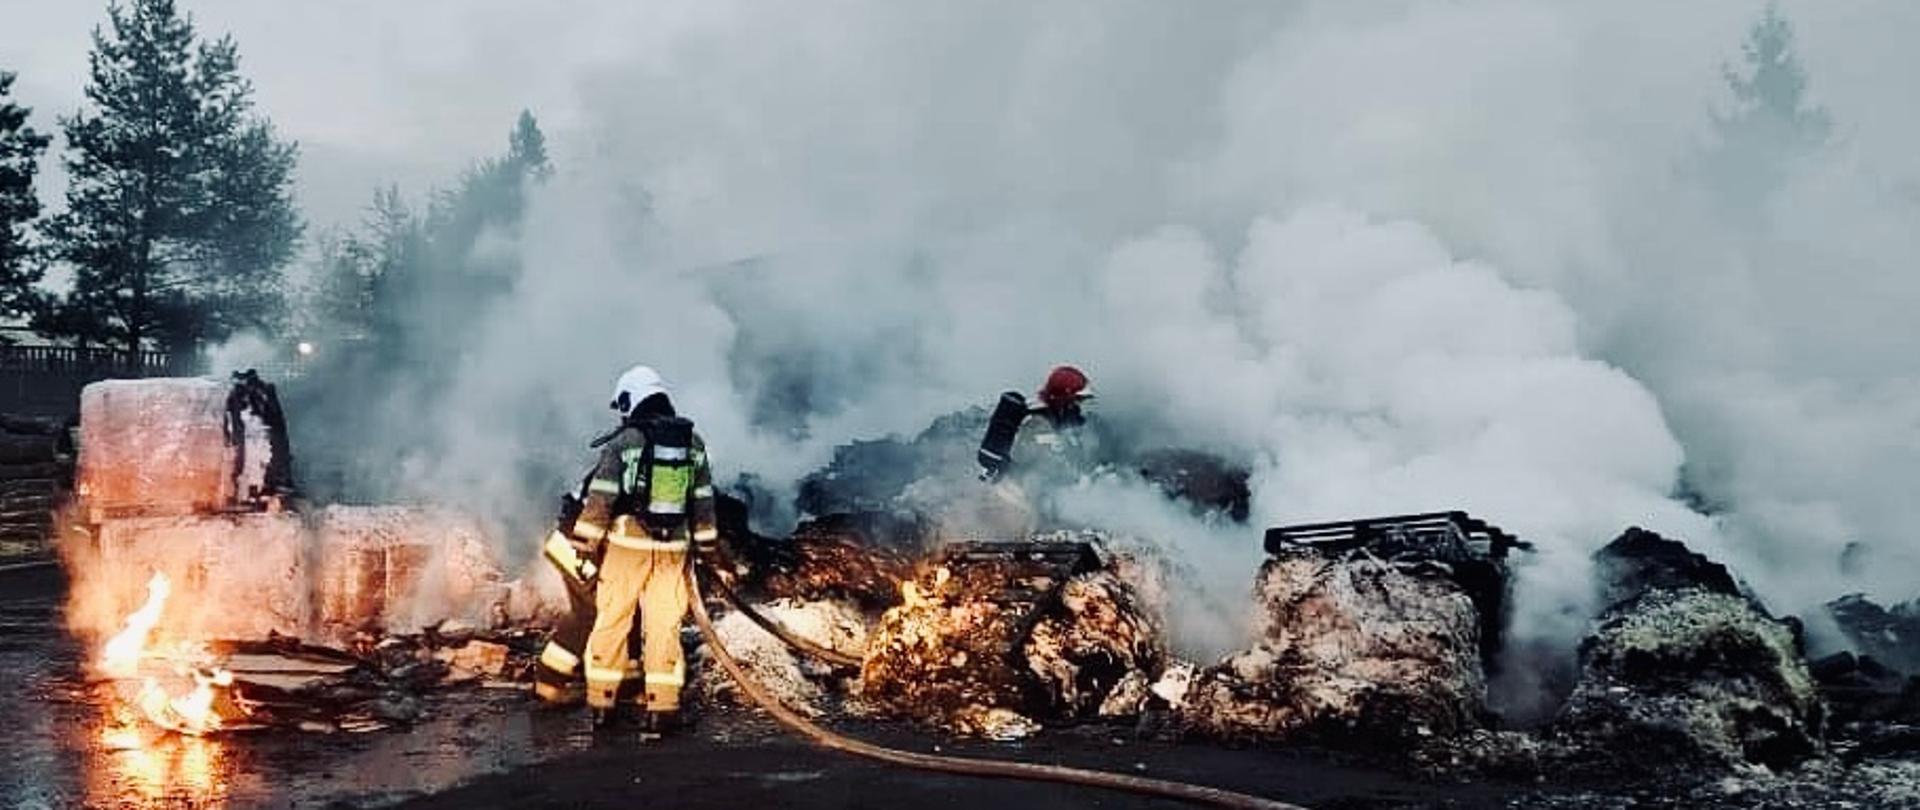 Na zdjęciu widać strażaka OSP oraz strażaka PSP w pełnych ubraniach ochronnych którzy podają prądy wody na palące się palety ze sprasowaną makulaturą.